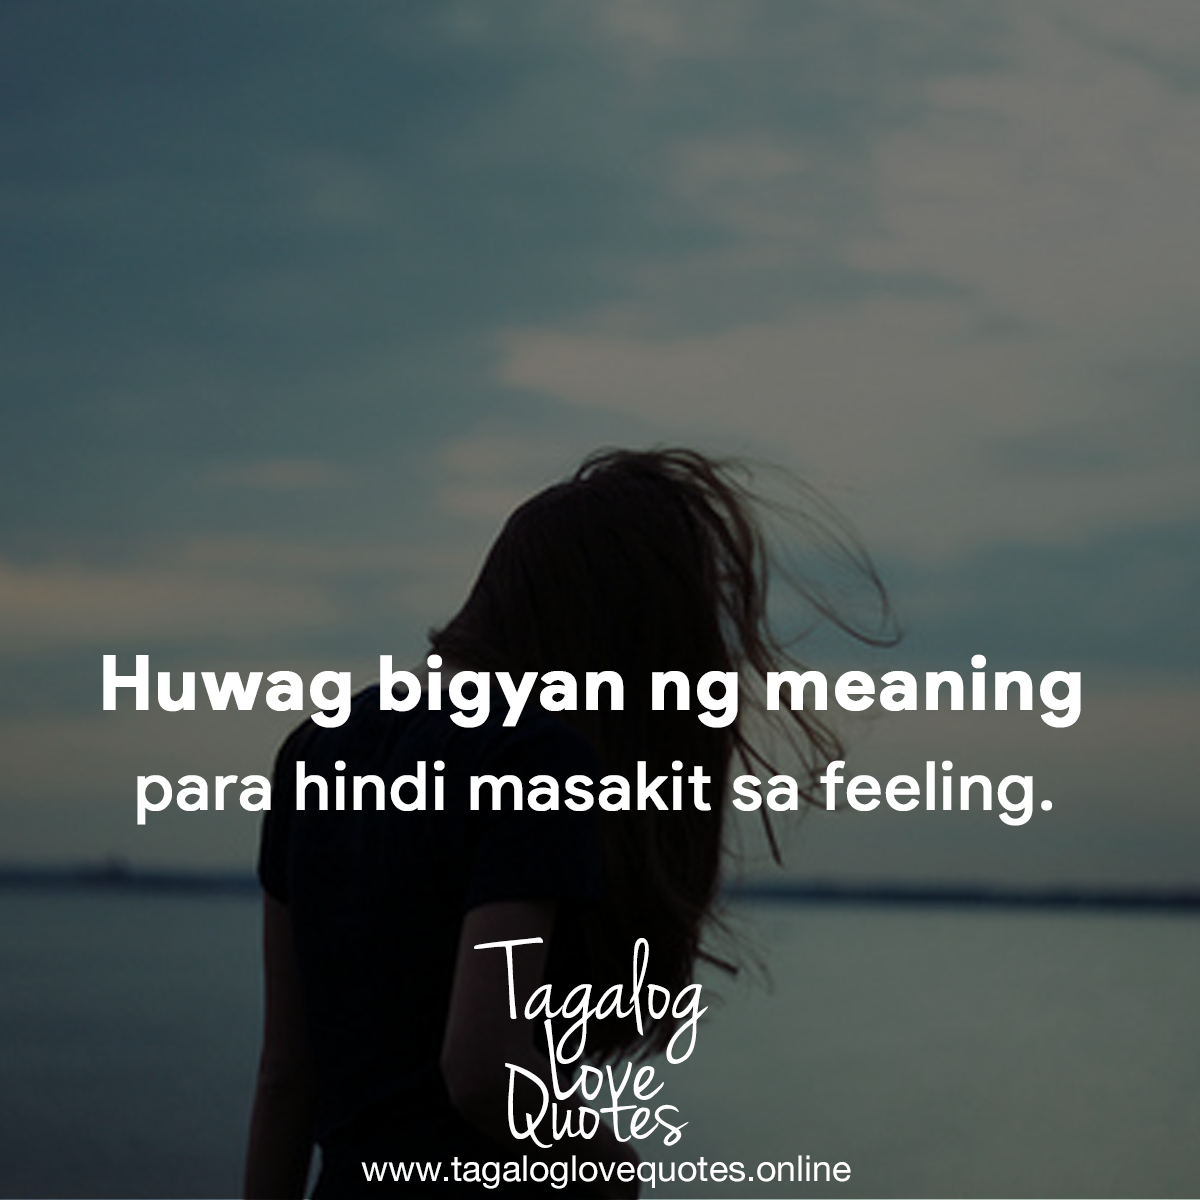 Huwag bigyan ng meaning